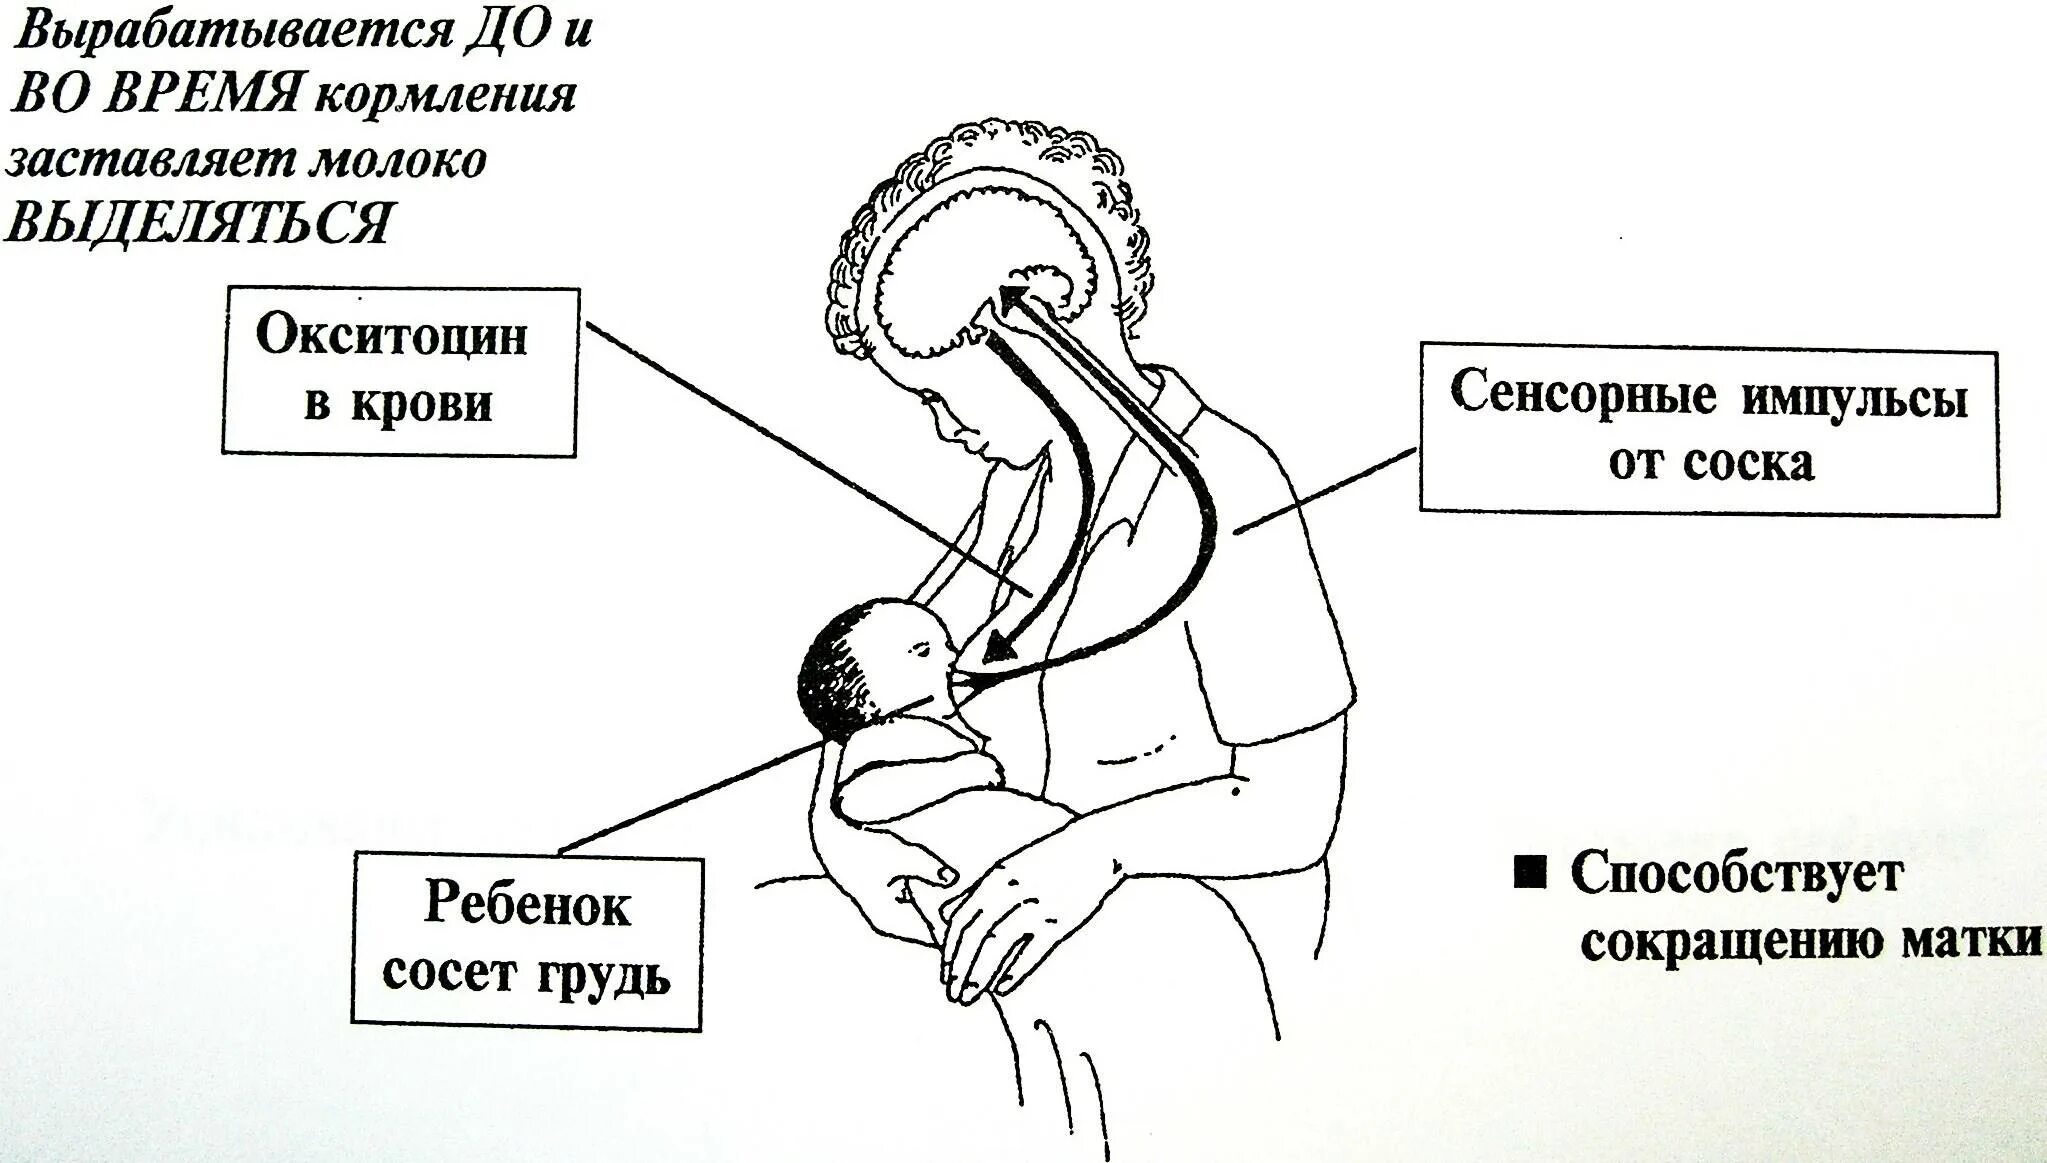 Акт сосания. Схема рефлекса окситоцина и пролактина. Механизм выделения грудного молока. Механизм сосания грудного молока ребенком. Рефлекс пролактина и окситоцина.